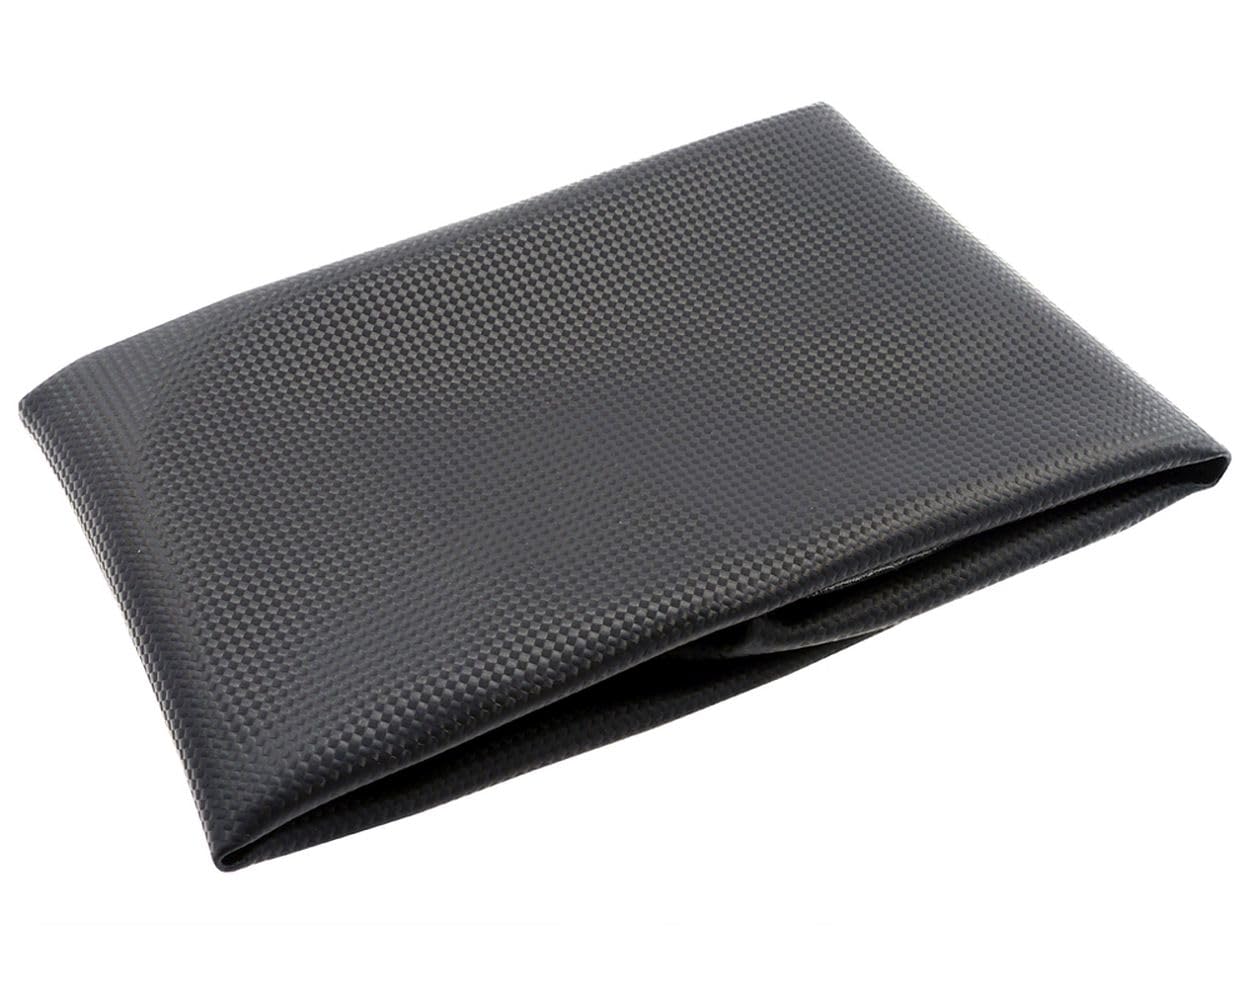 2EXTREME Sitzbezug Carbon schwarz kompatibel für Piaggio NRG MC3, 50ccm, 2-Takt, LC, AC, wassergekühlt von 2EXTREME